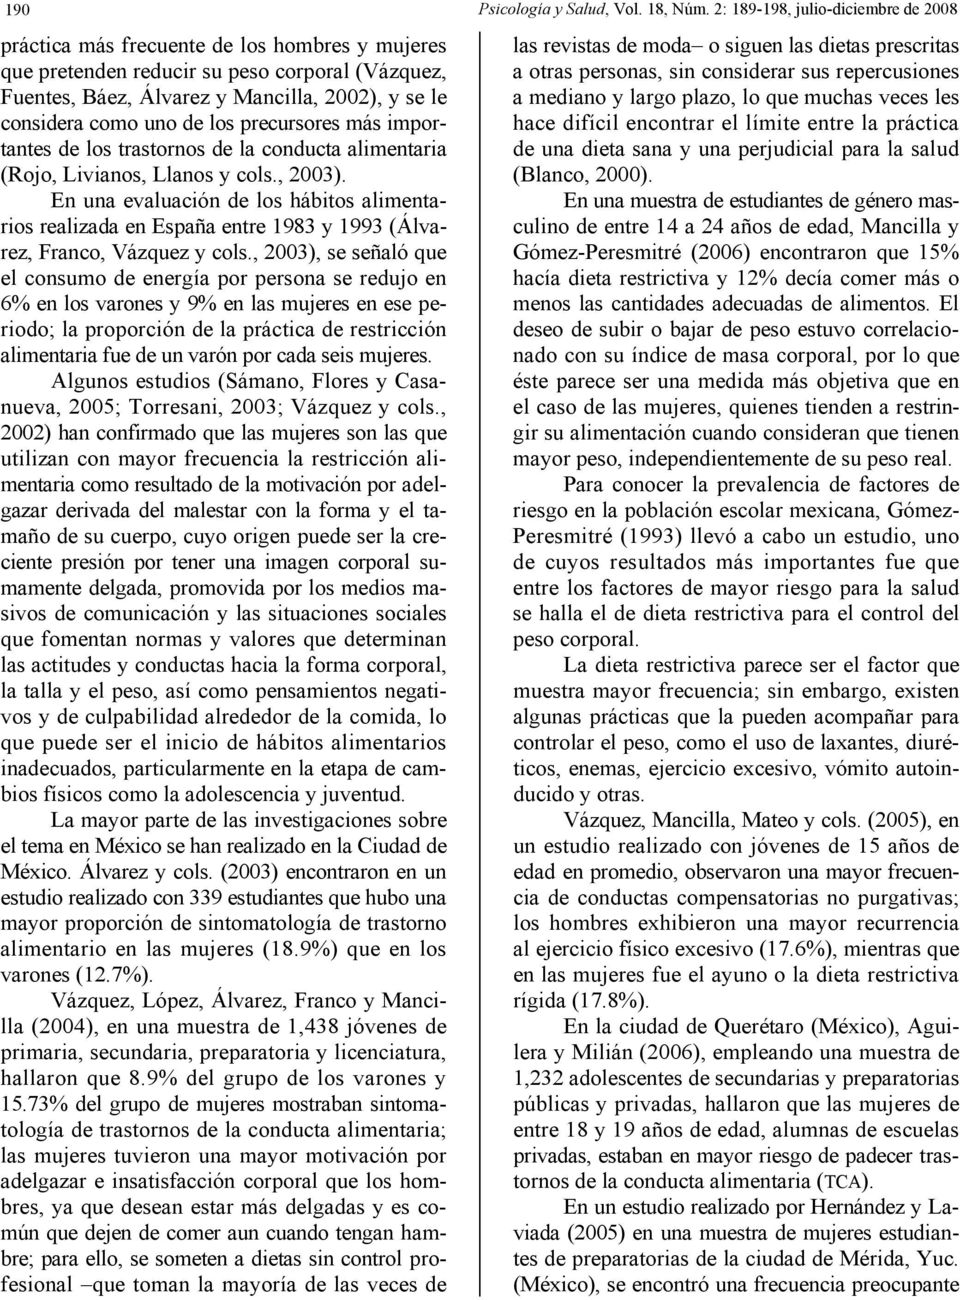 de los precursores más importantes de los trastornos de la conducta alimentaria (Rojo, Livianos, Llanos y cols., 2003).